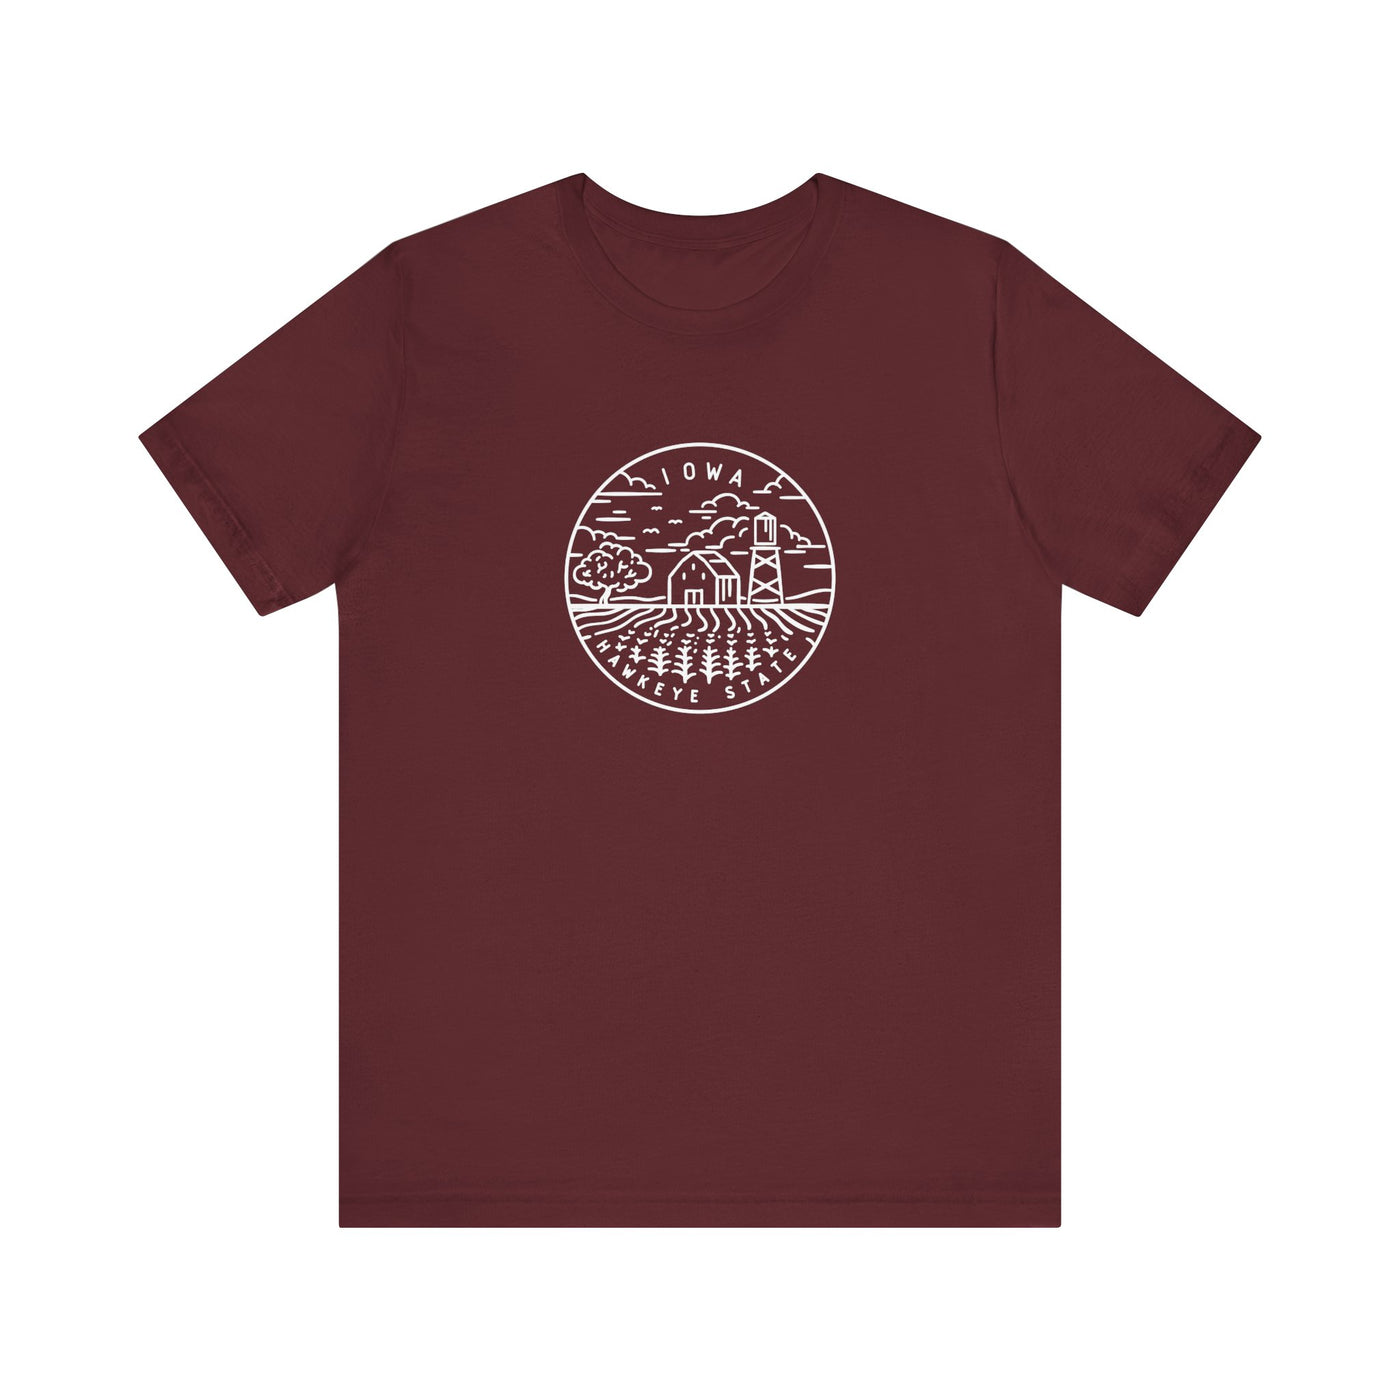 Iowa State Motto Unisex T-Shirt